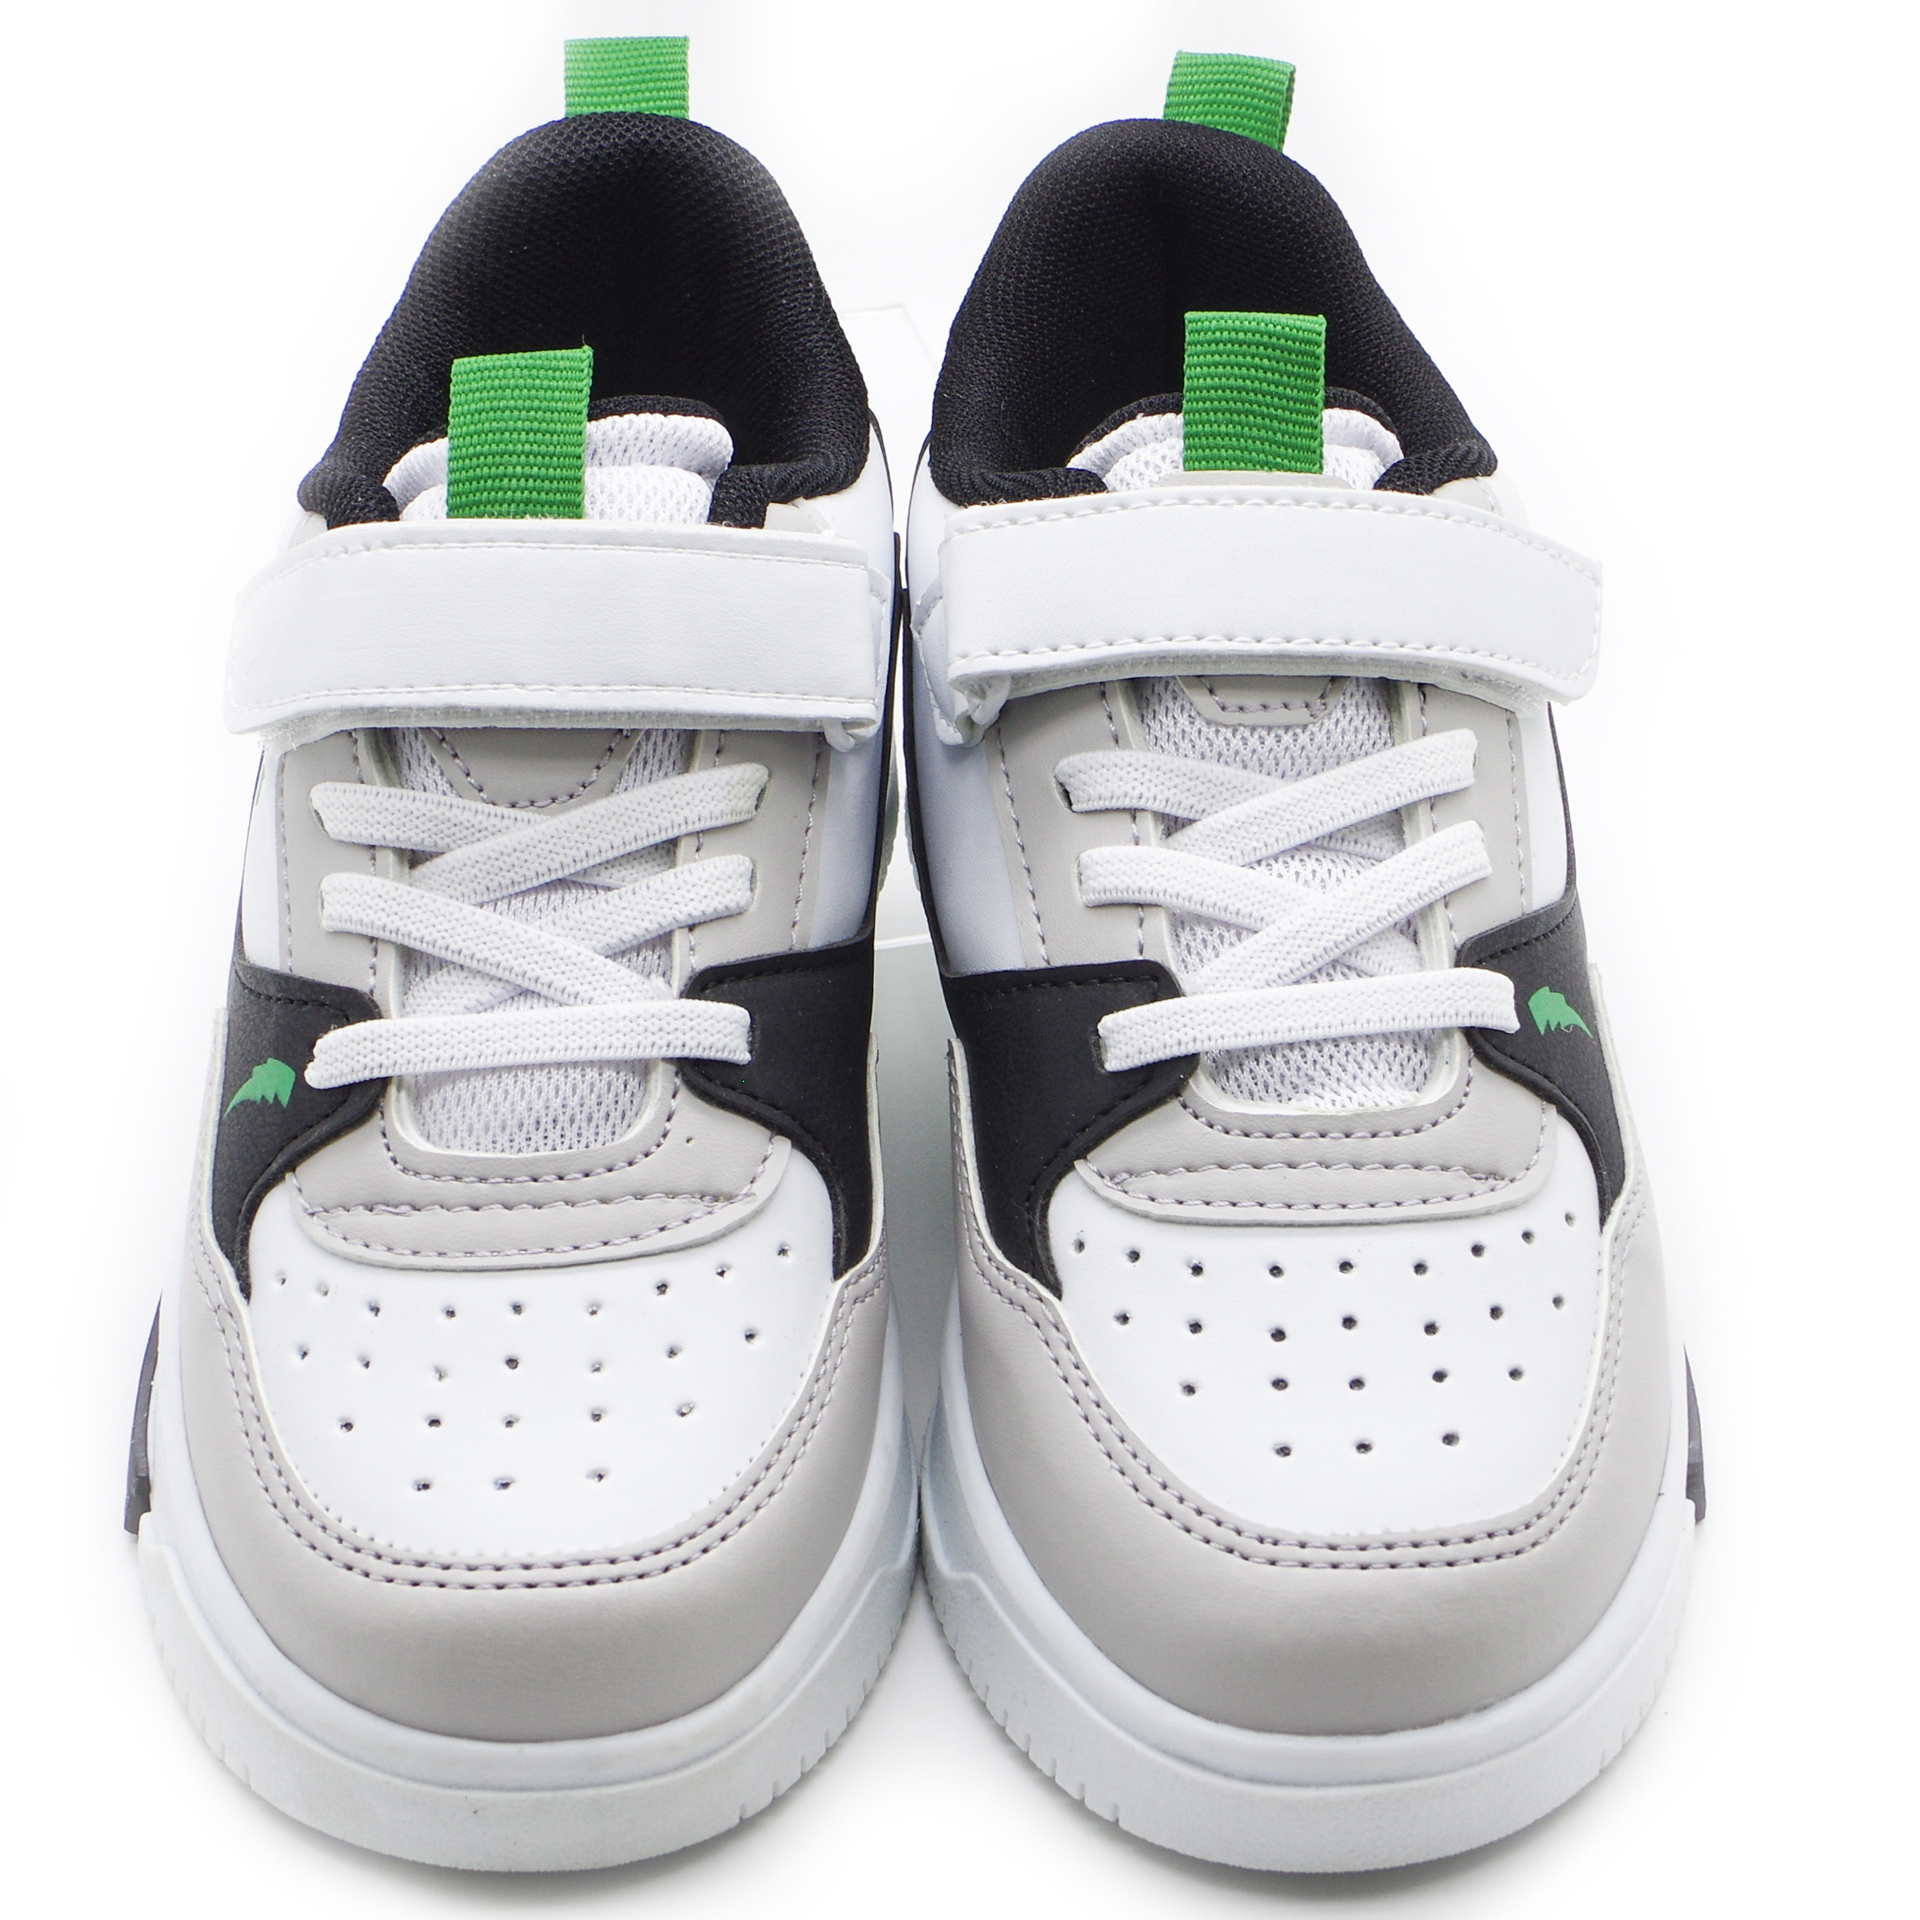 Кросівки дитячі (2193) для хлопчика, матеріал Текстиль, Зелений колір, 31-35 розміри – Sole Kids. Фото 3